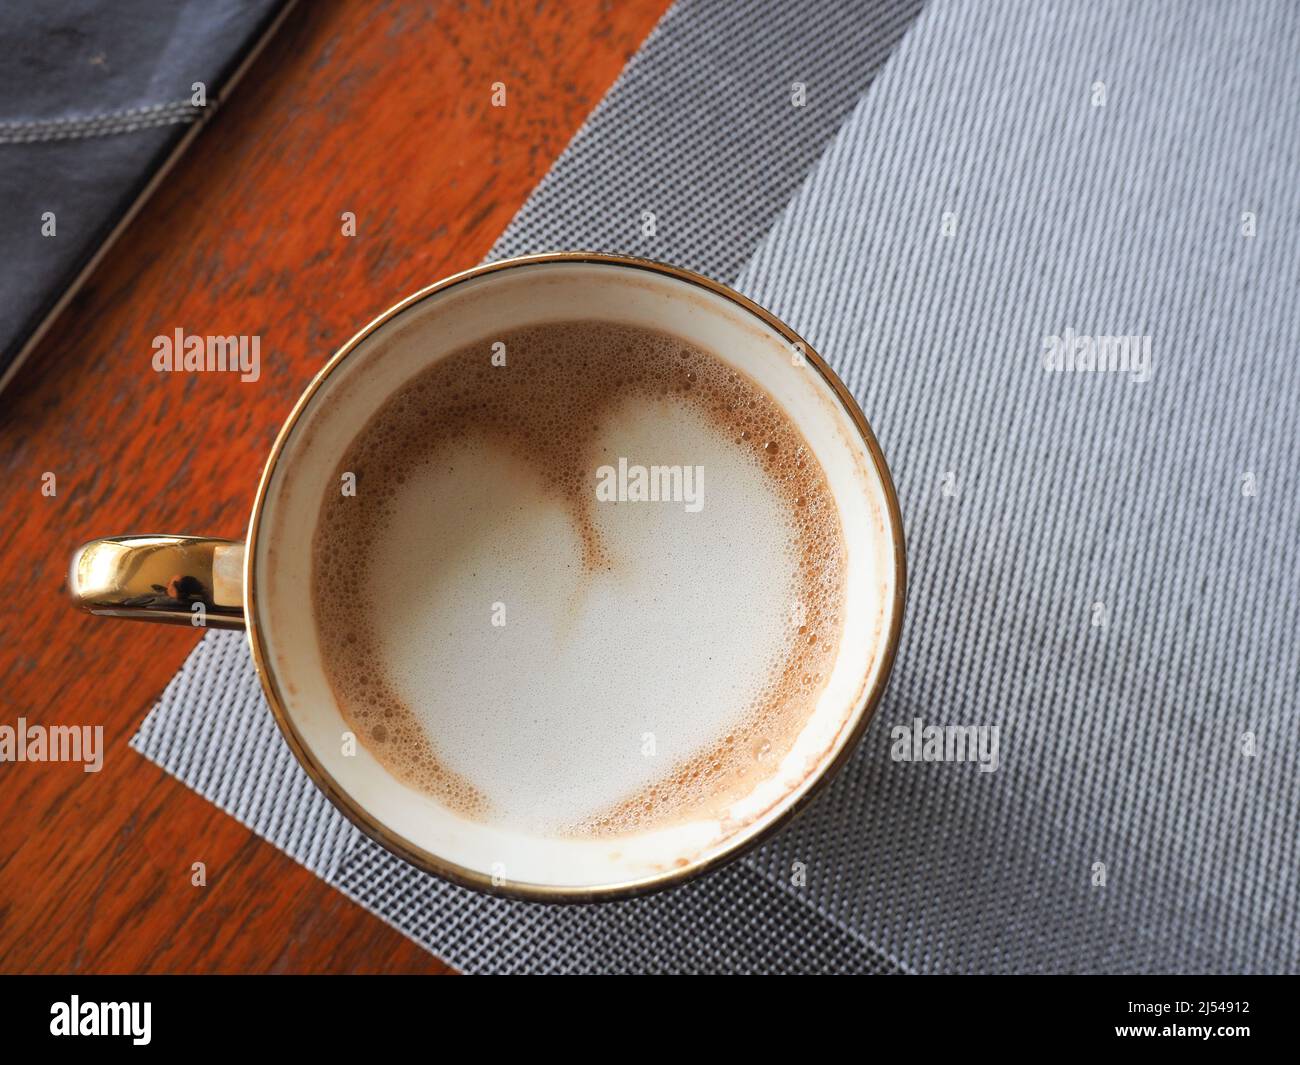 Gros plan d'une tasse de café vue d'en haut montrant l'art latte en forme de coeur Banque D'Images